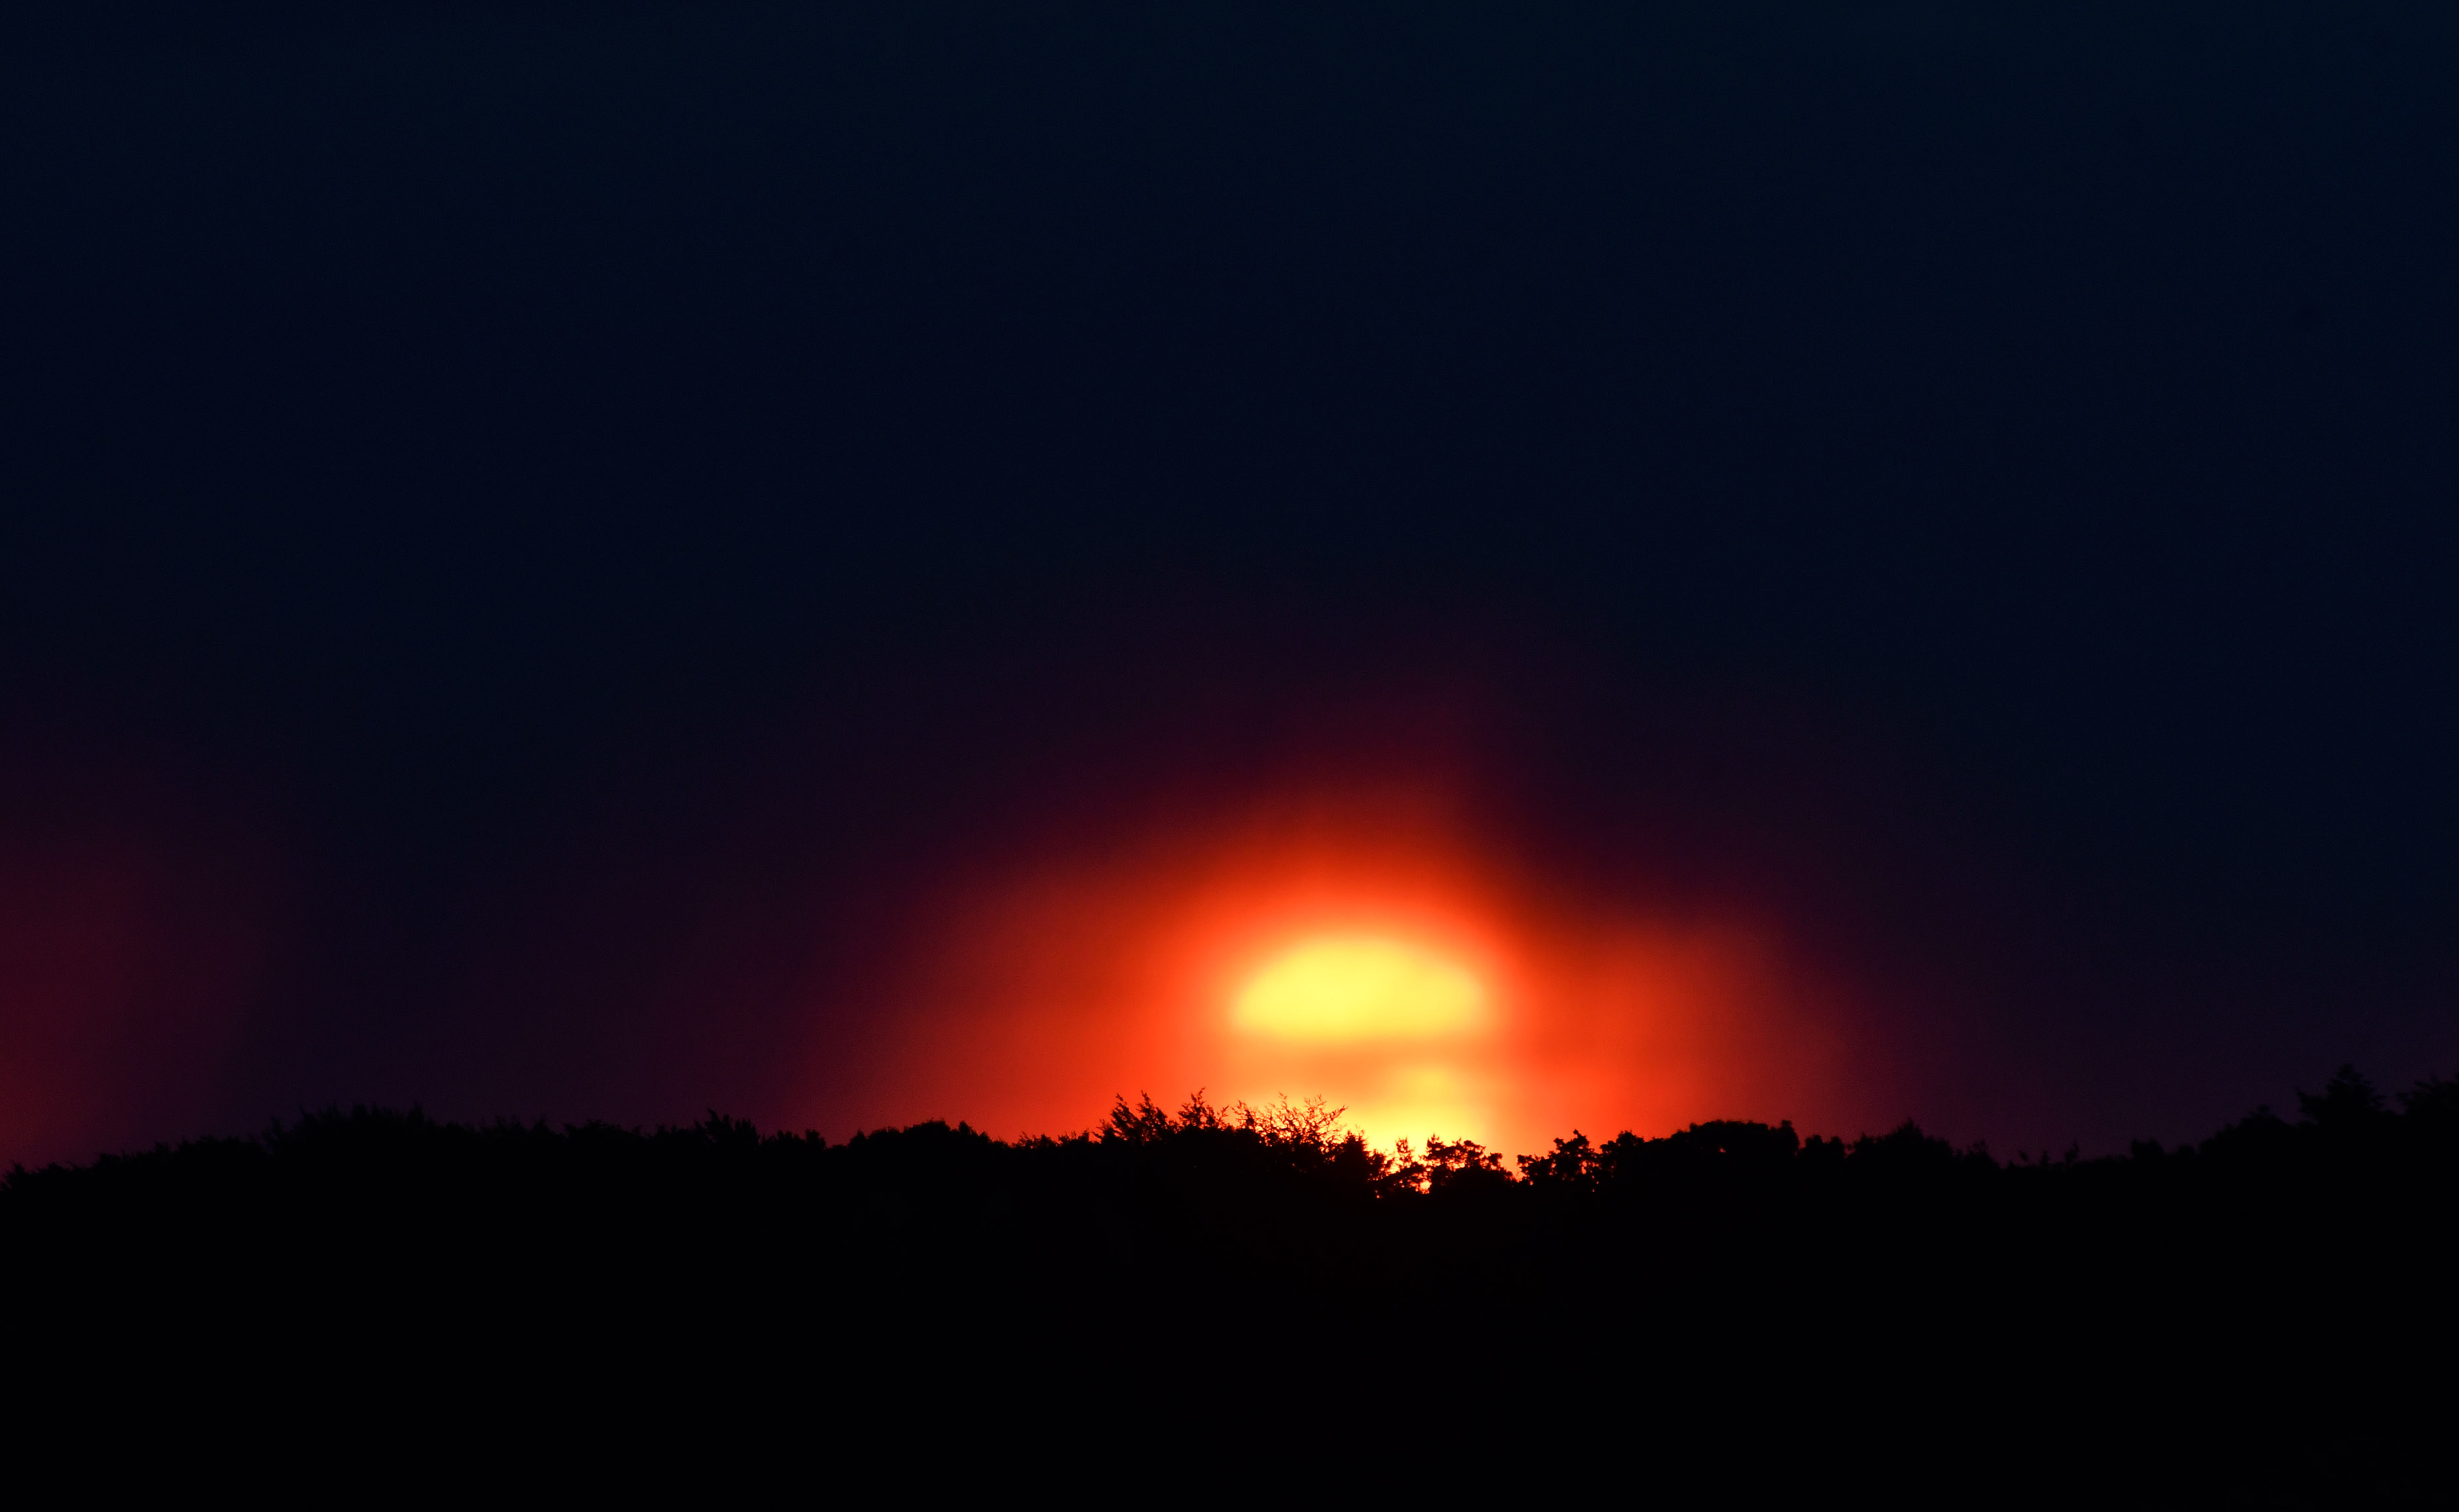 Schitterende zonsopkomst boven de Veluwe vanmorgen om 5.45 uur - Foto: ©Louis Fraanje